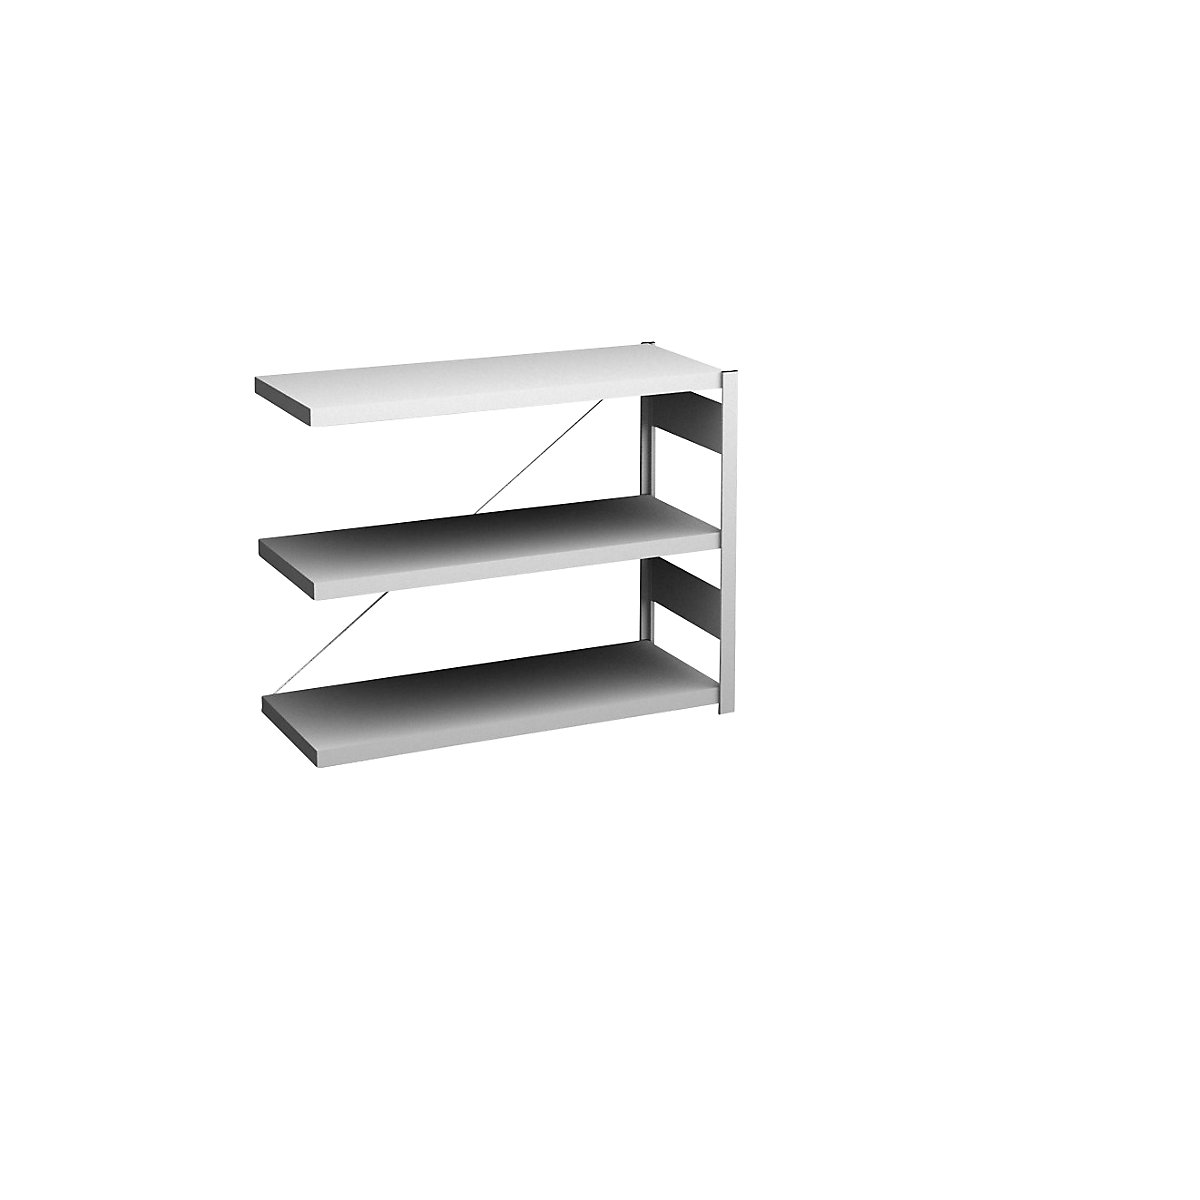 Sideboard shelving unit, light grey – hofe, height 825 mm, 3 shelves, extension shelf unit, shelf depth 400 mm, max. shelf load 145 kg-8